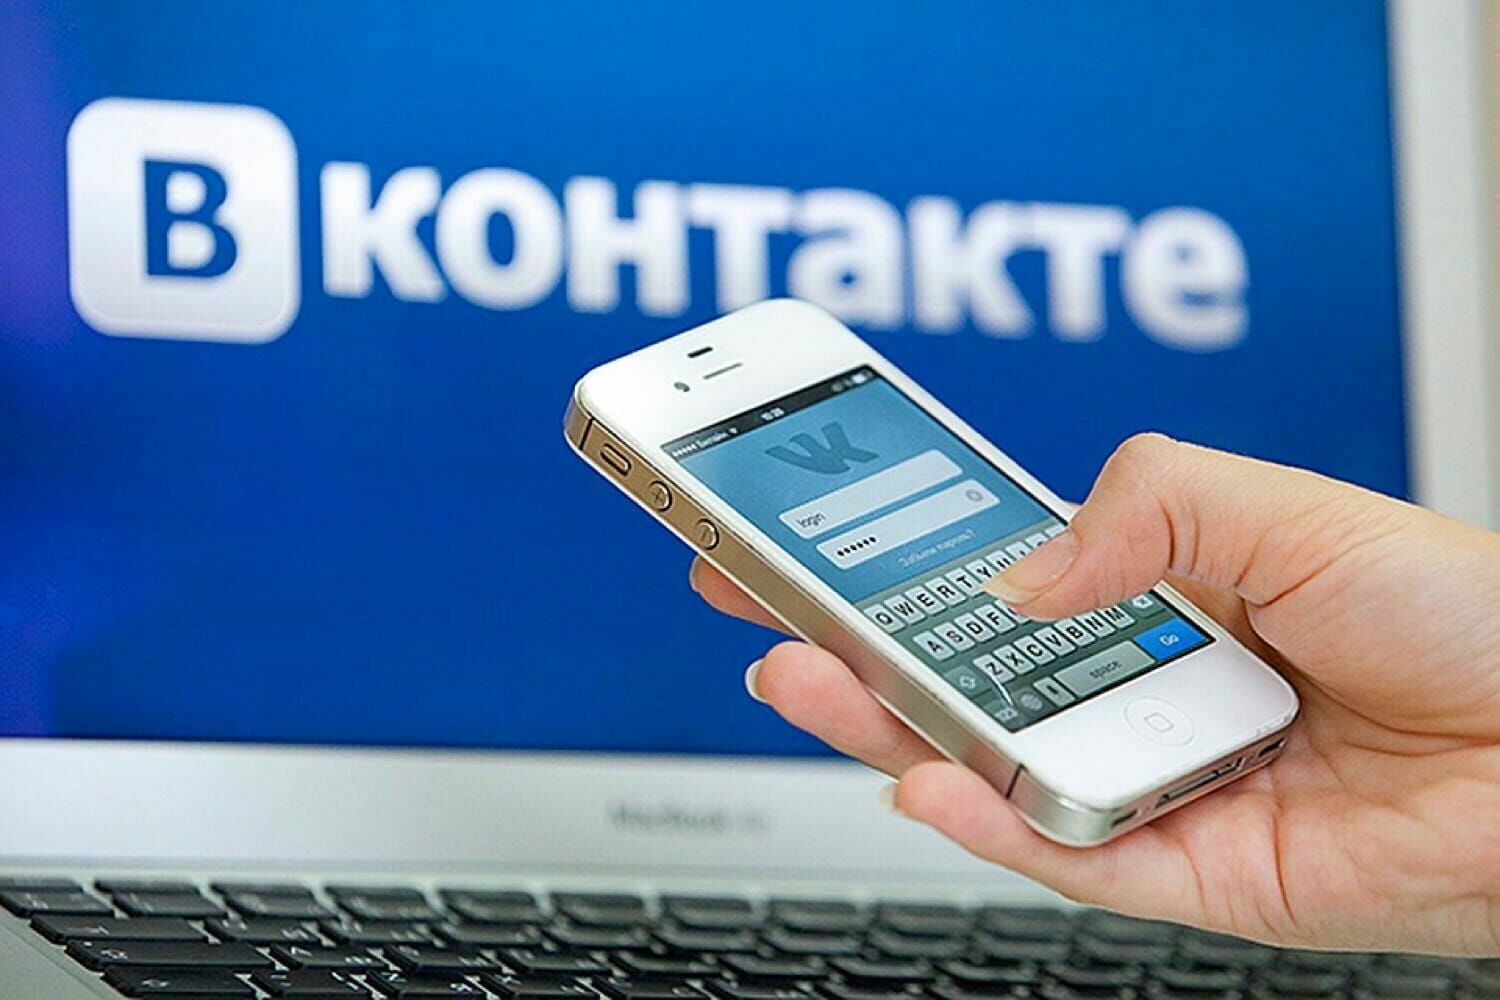 "Вконтакте" получила еще один штраф в 1,5 млн рублей за неудаление запрещенных постов